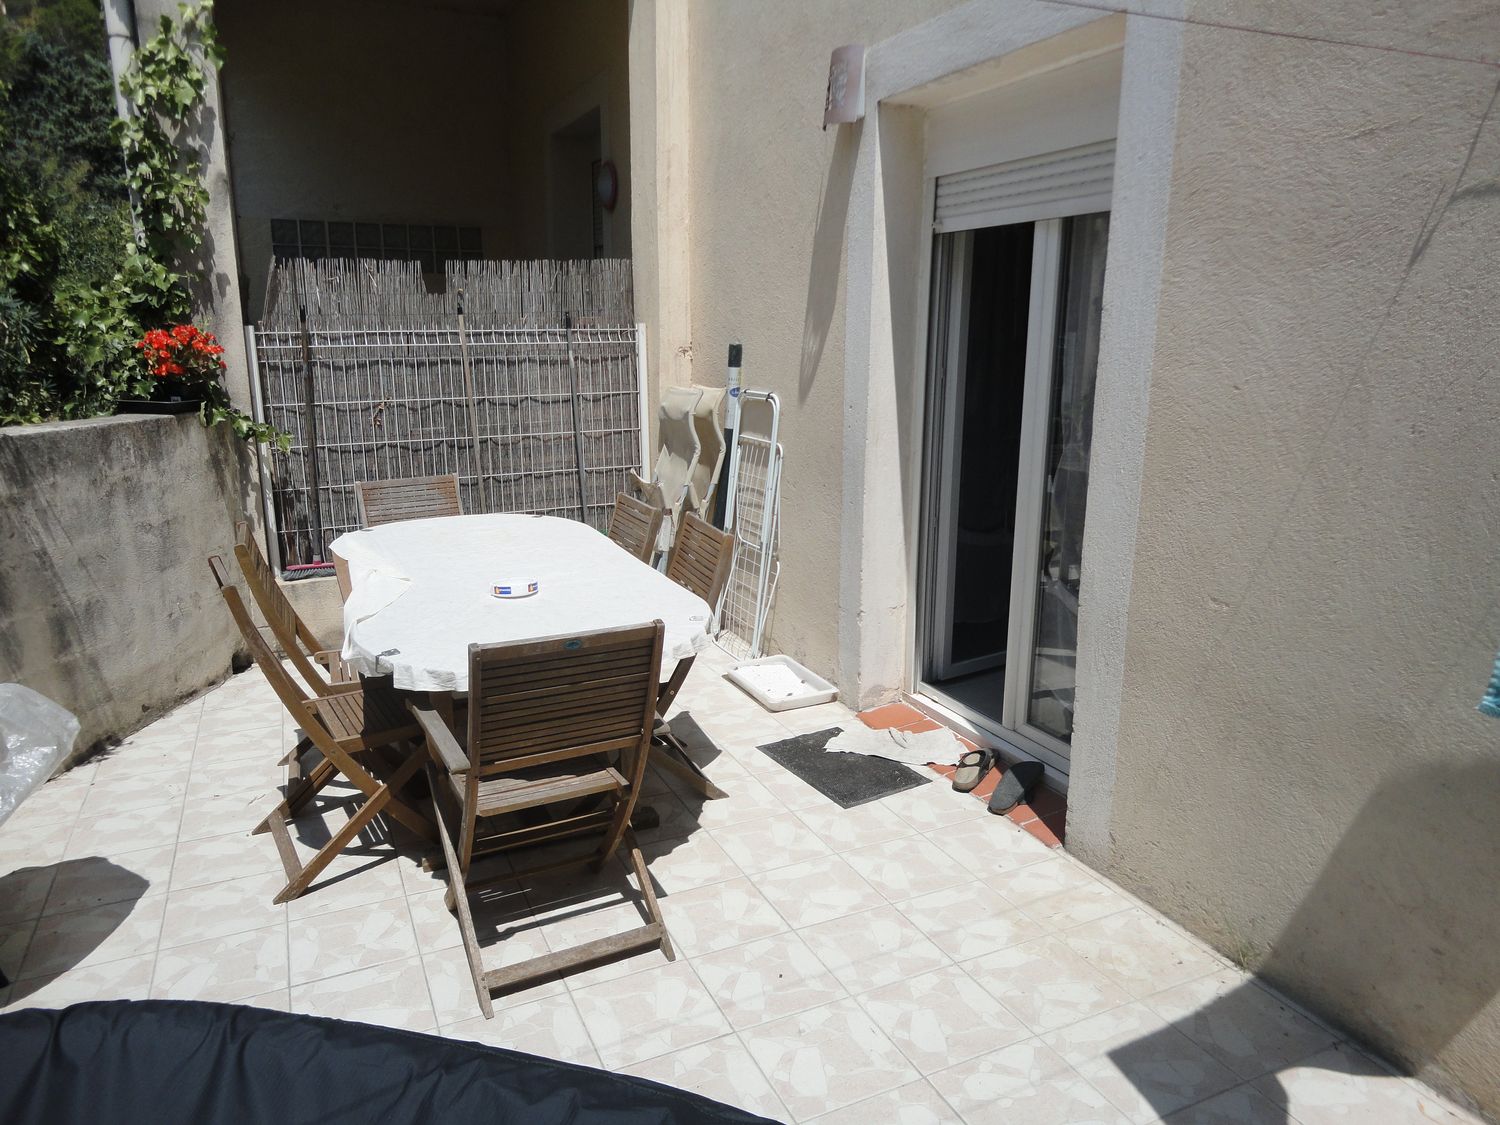 A vendre appartement 2 en duplex Roquefort La Bédoule avec belle terrasse de 18m², cave et parking privatif